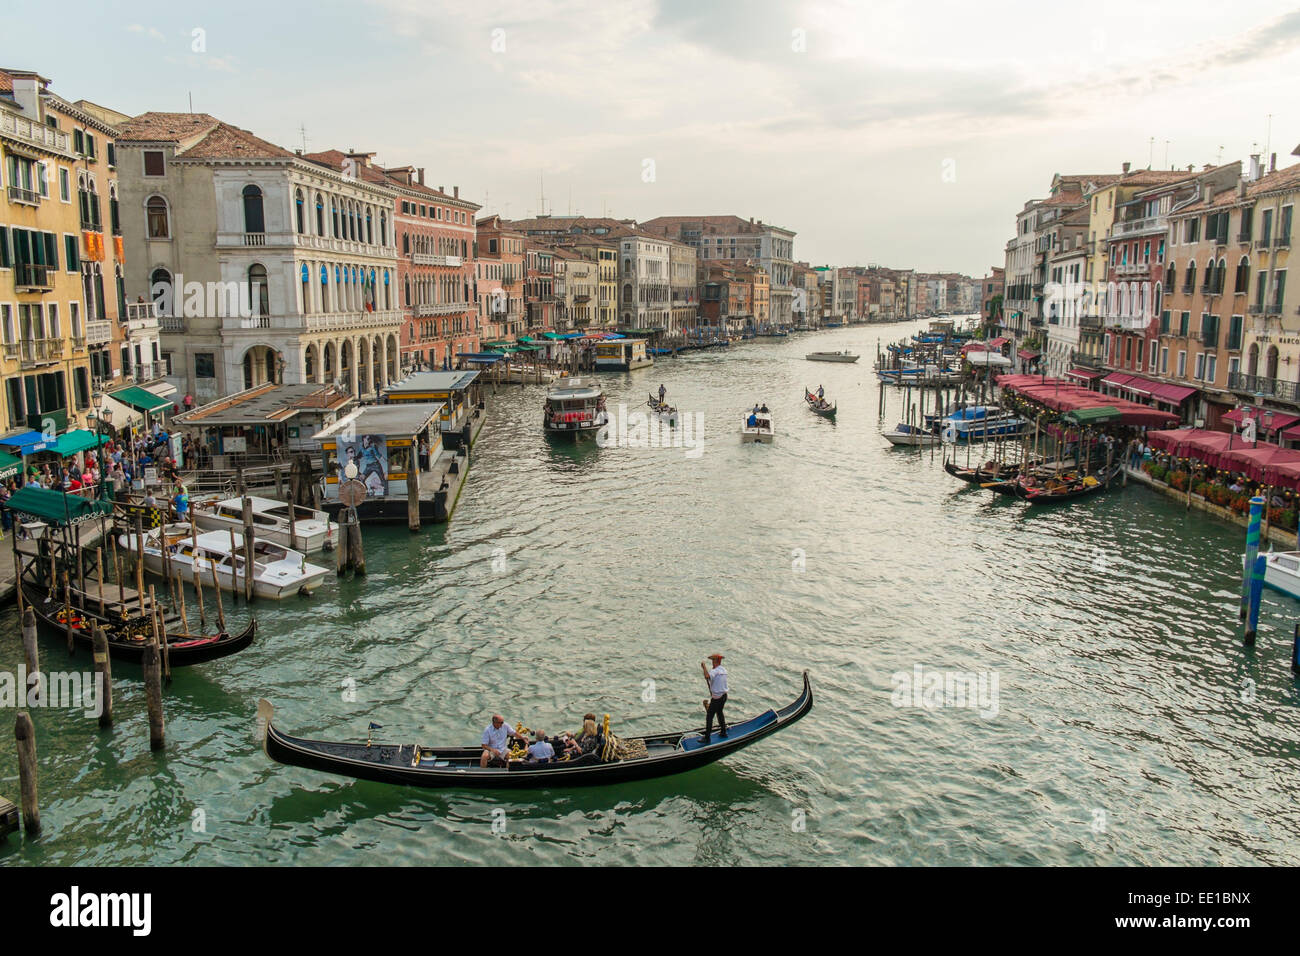 Canal Grande, Venice, Veneto Region, Italy Stock Photo